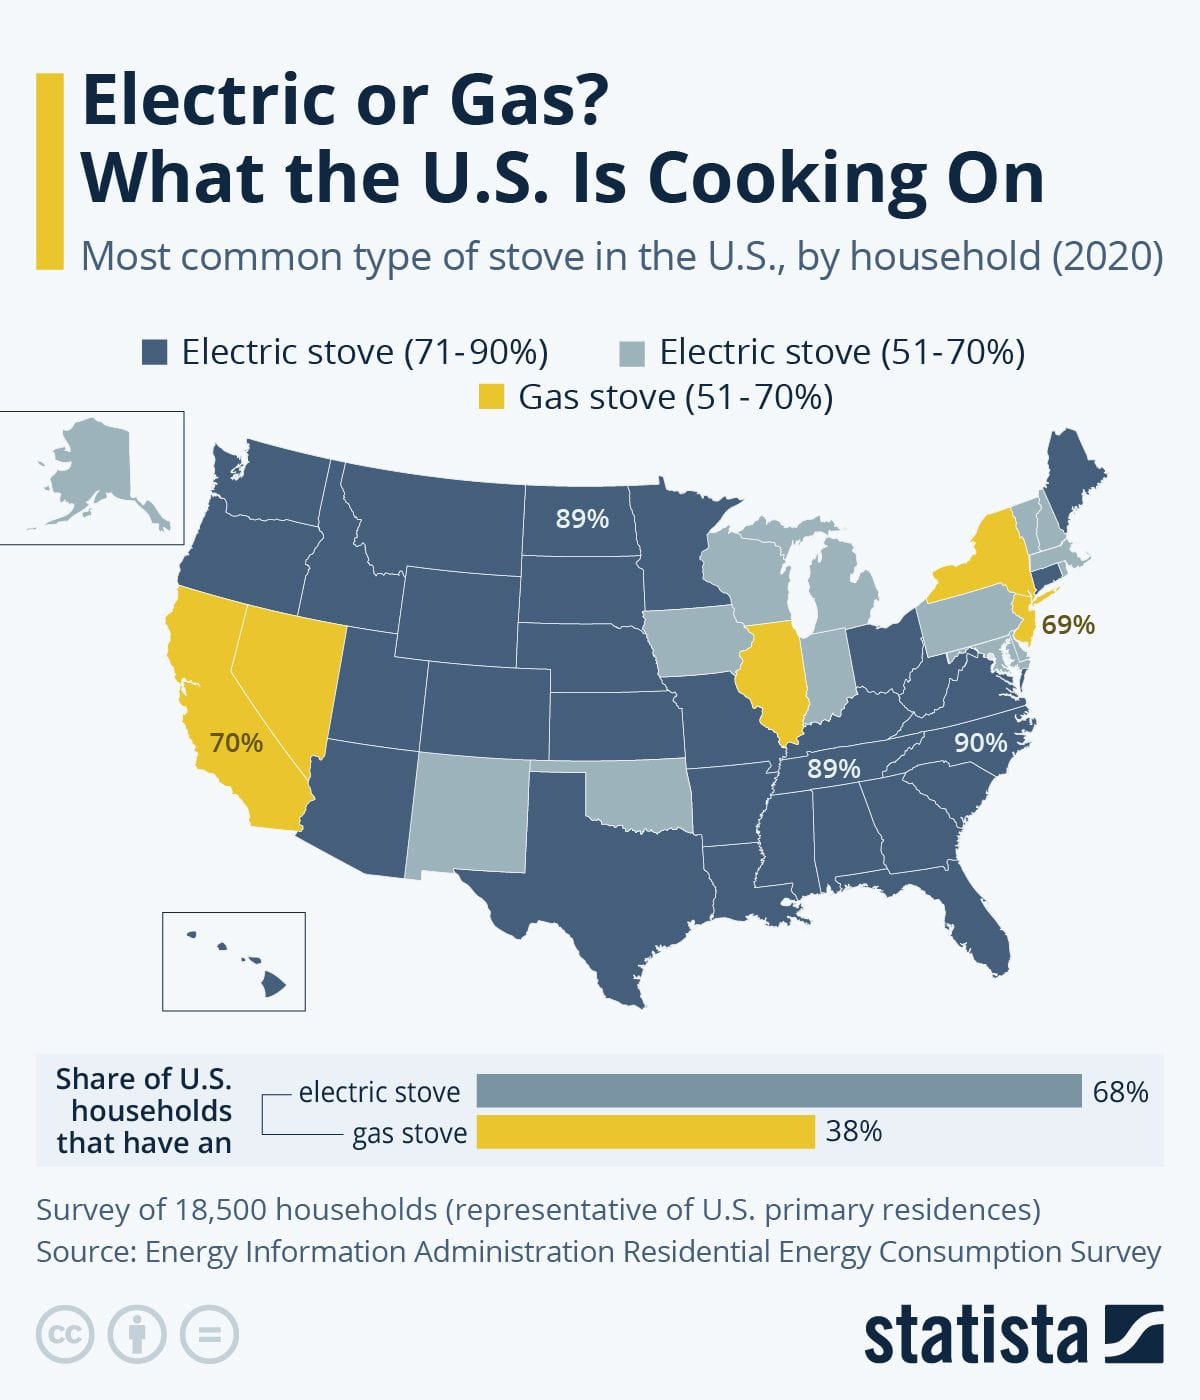 Die Grafik zeigt die Verbreitung von Gas- und Elektroherden in den USA.